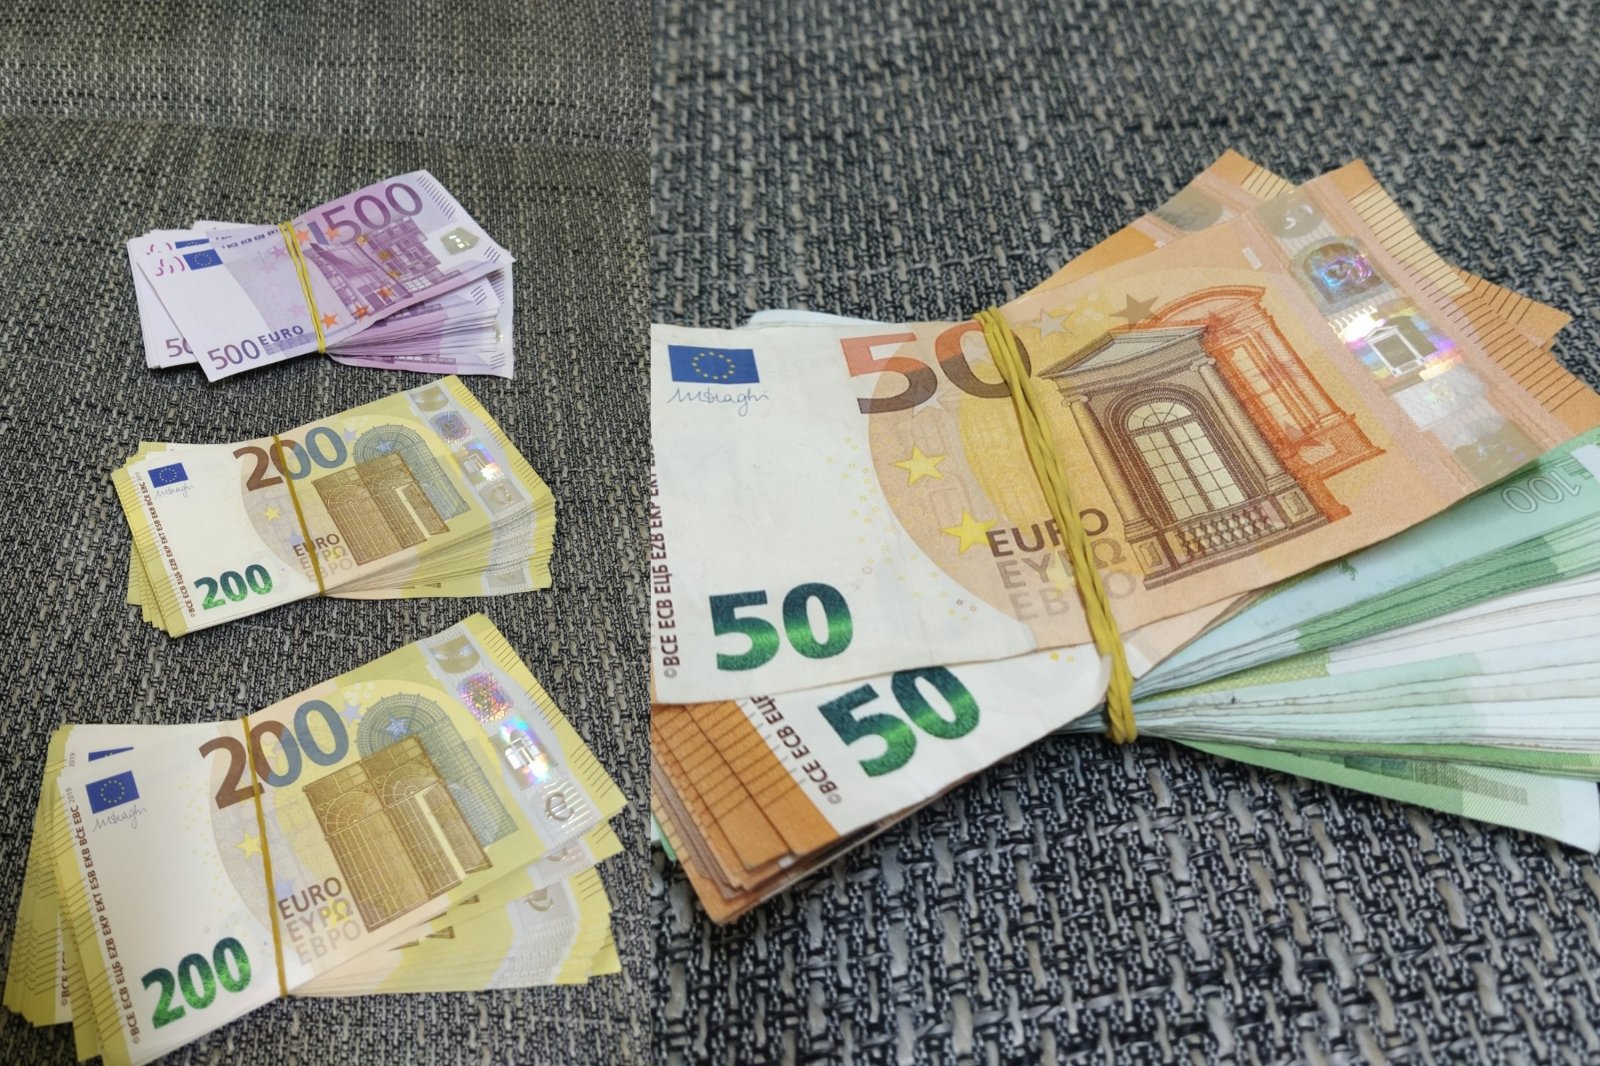 Pinigų kontrabanda Šalčininkuose: dviračiu atvažiavęs užsienietis 40 tūkst. eurų buvo prisiklijavęs prie kojų